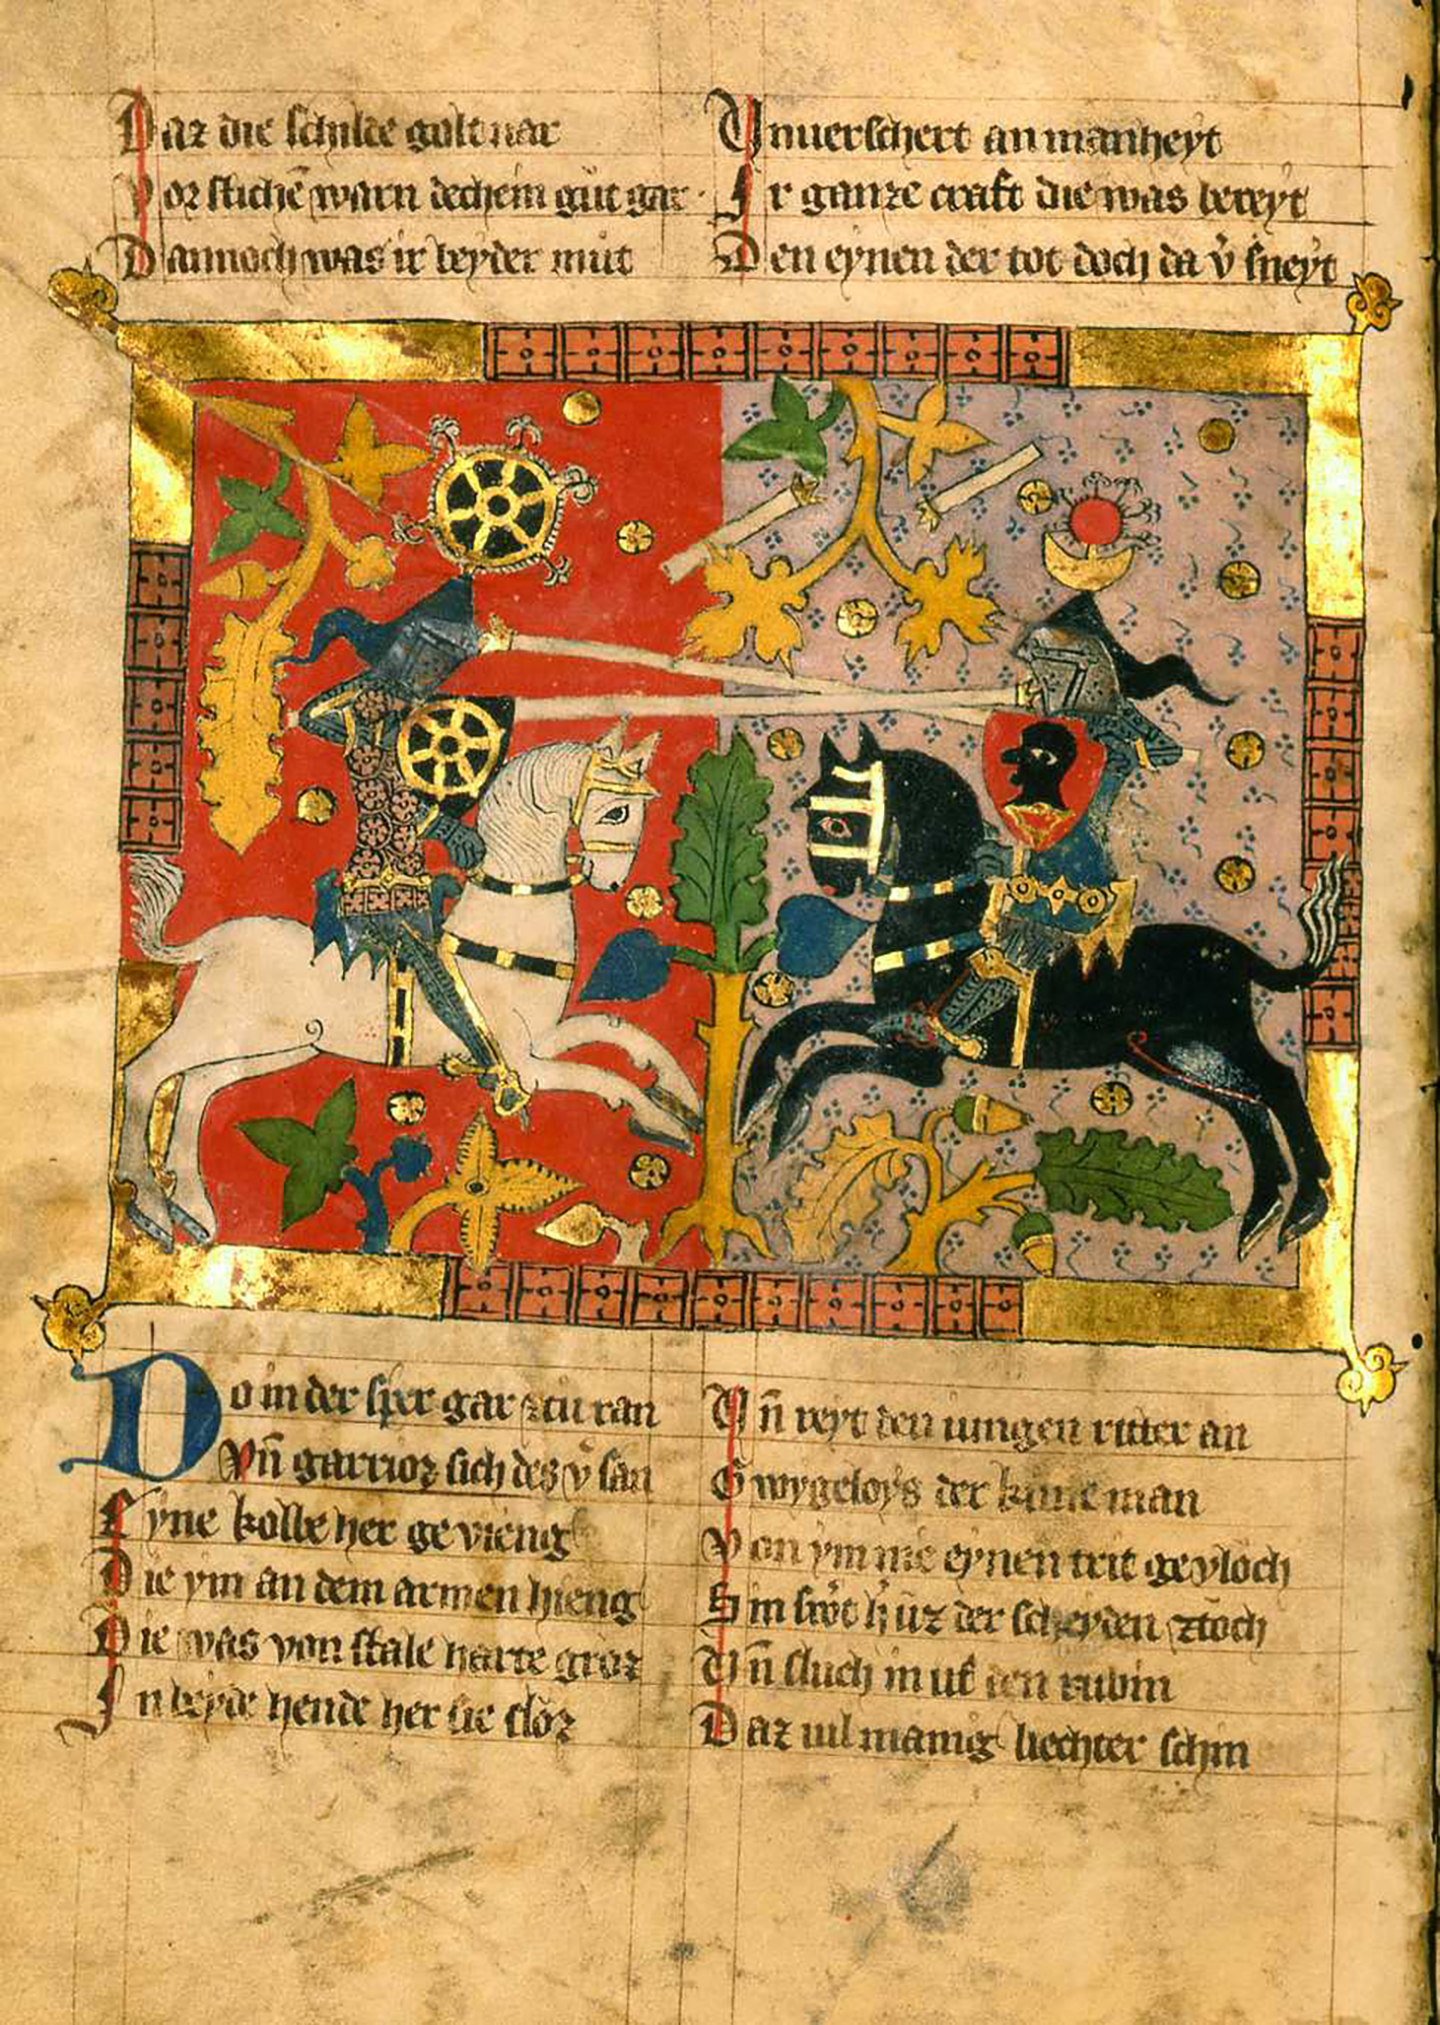 Bản thảo tiếng Đức mô tả chi tiết câu chuyện tình lãng mạn của anh hùng Wigalois thời Vua Arthur, năm 1372, tác giả Jan con Bruswick, theo ghi chép ở cuối sách (fol. \117v). Đại học Leiden, nước Đức. (Ảnh: Bộ sưu tập Thư viện Đại học Leiden/ CC BY 4.0 DEED)